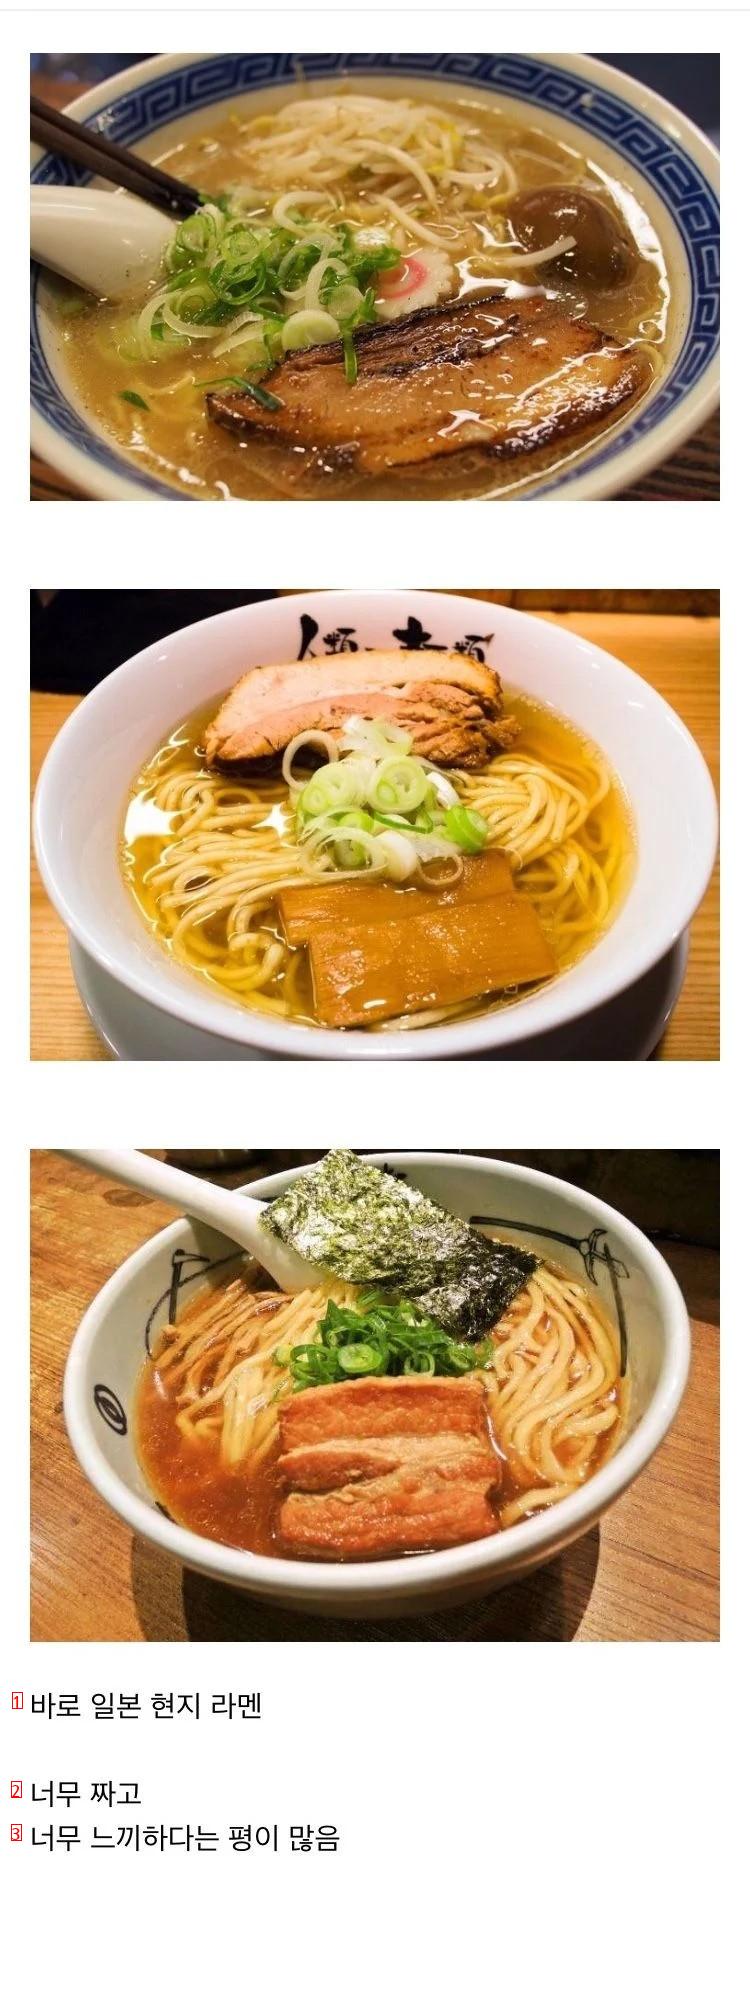 일본 갔다온 사람들한테서 의외로 평가 안좋은 음식